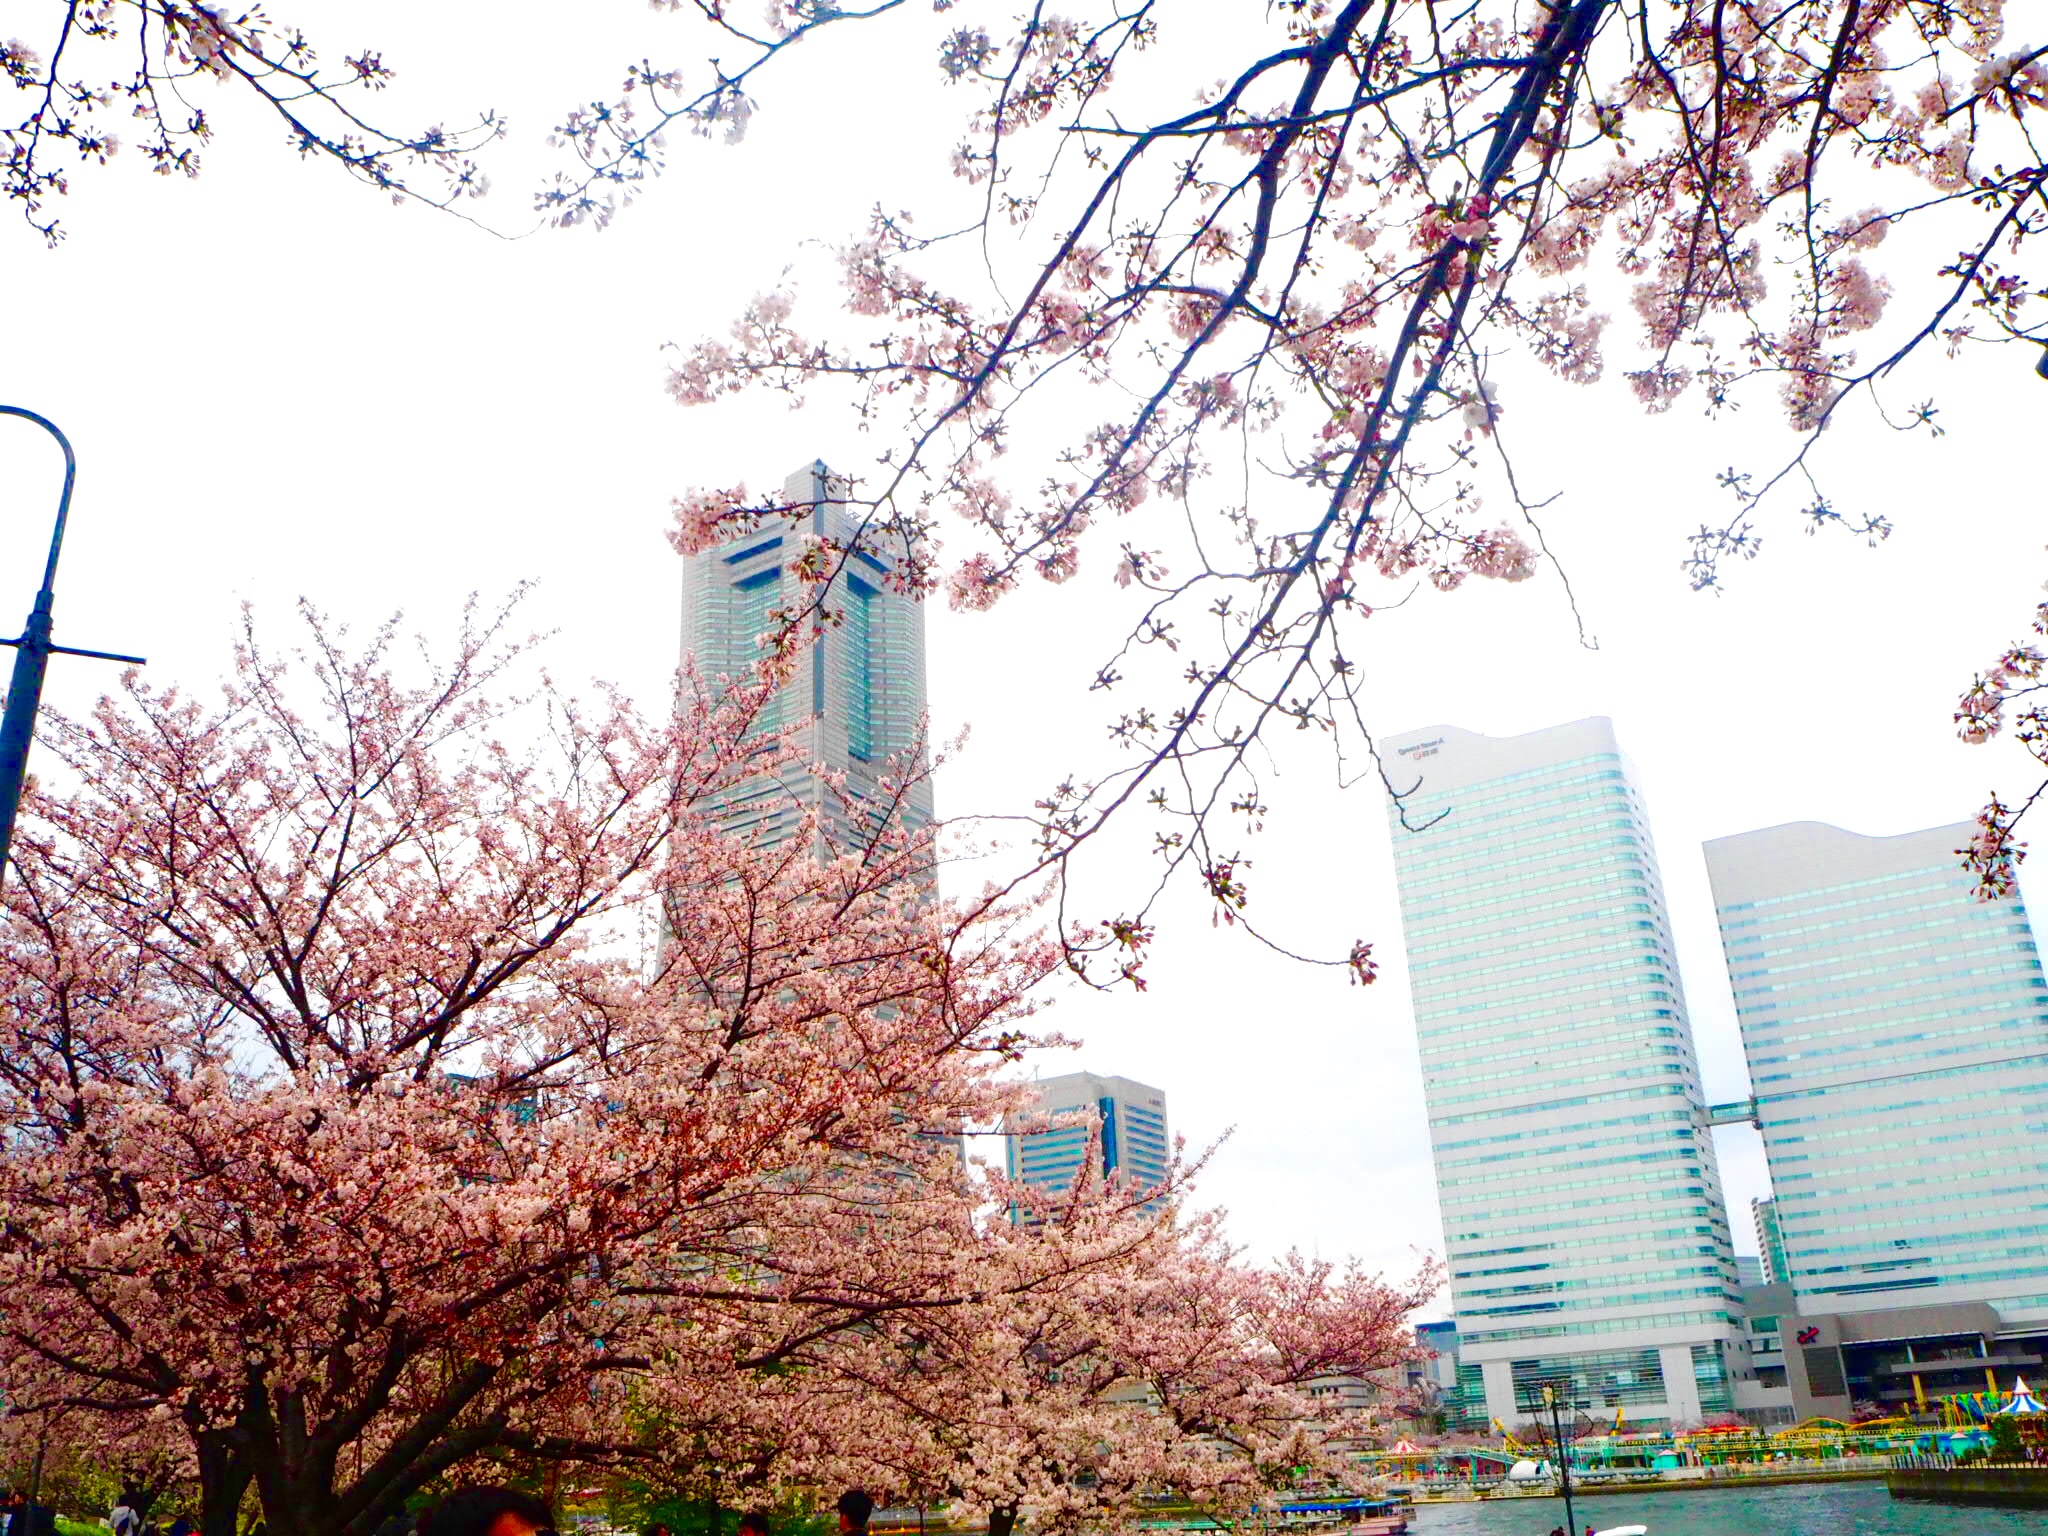 [EN] How to Enjoy Spring in Japan